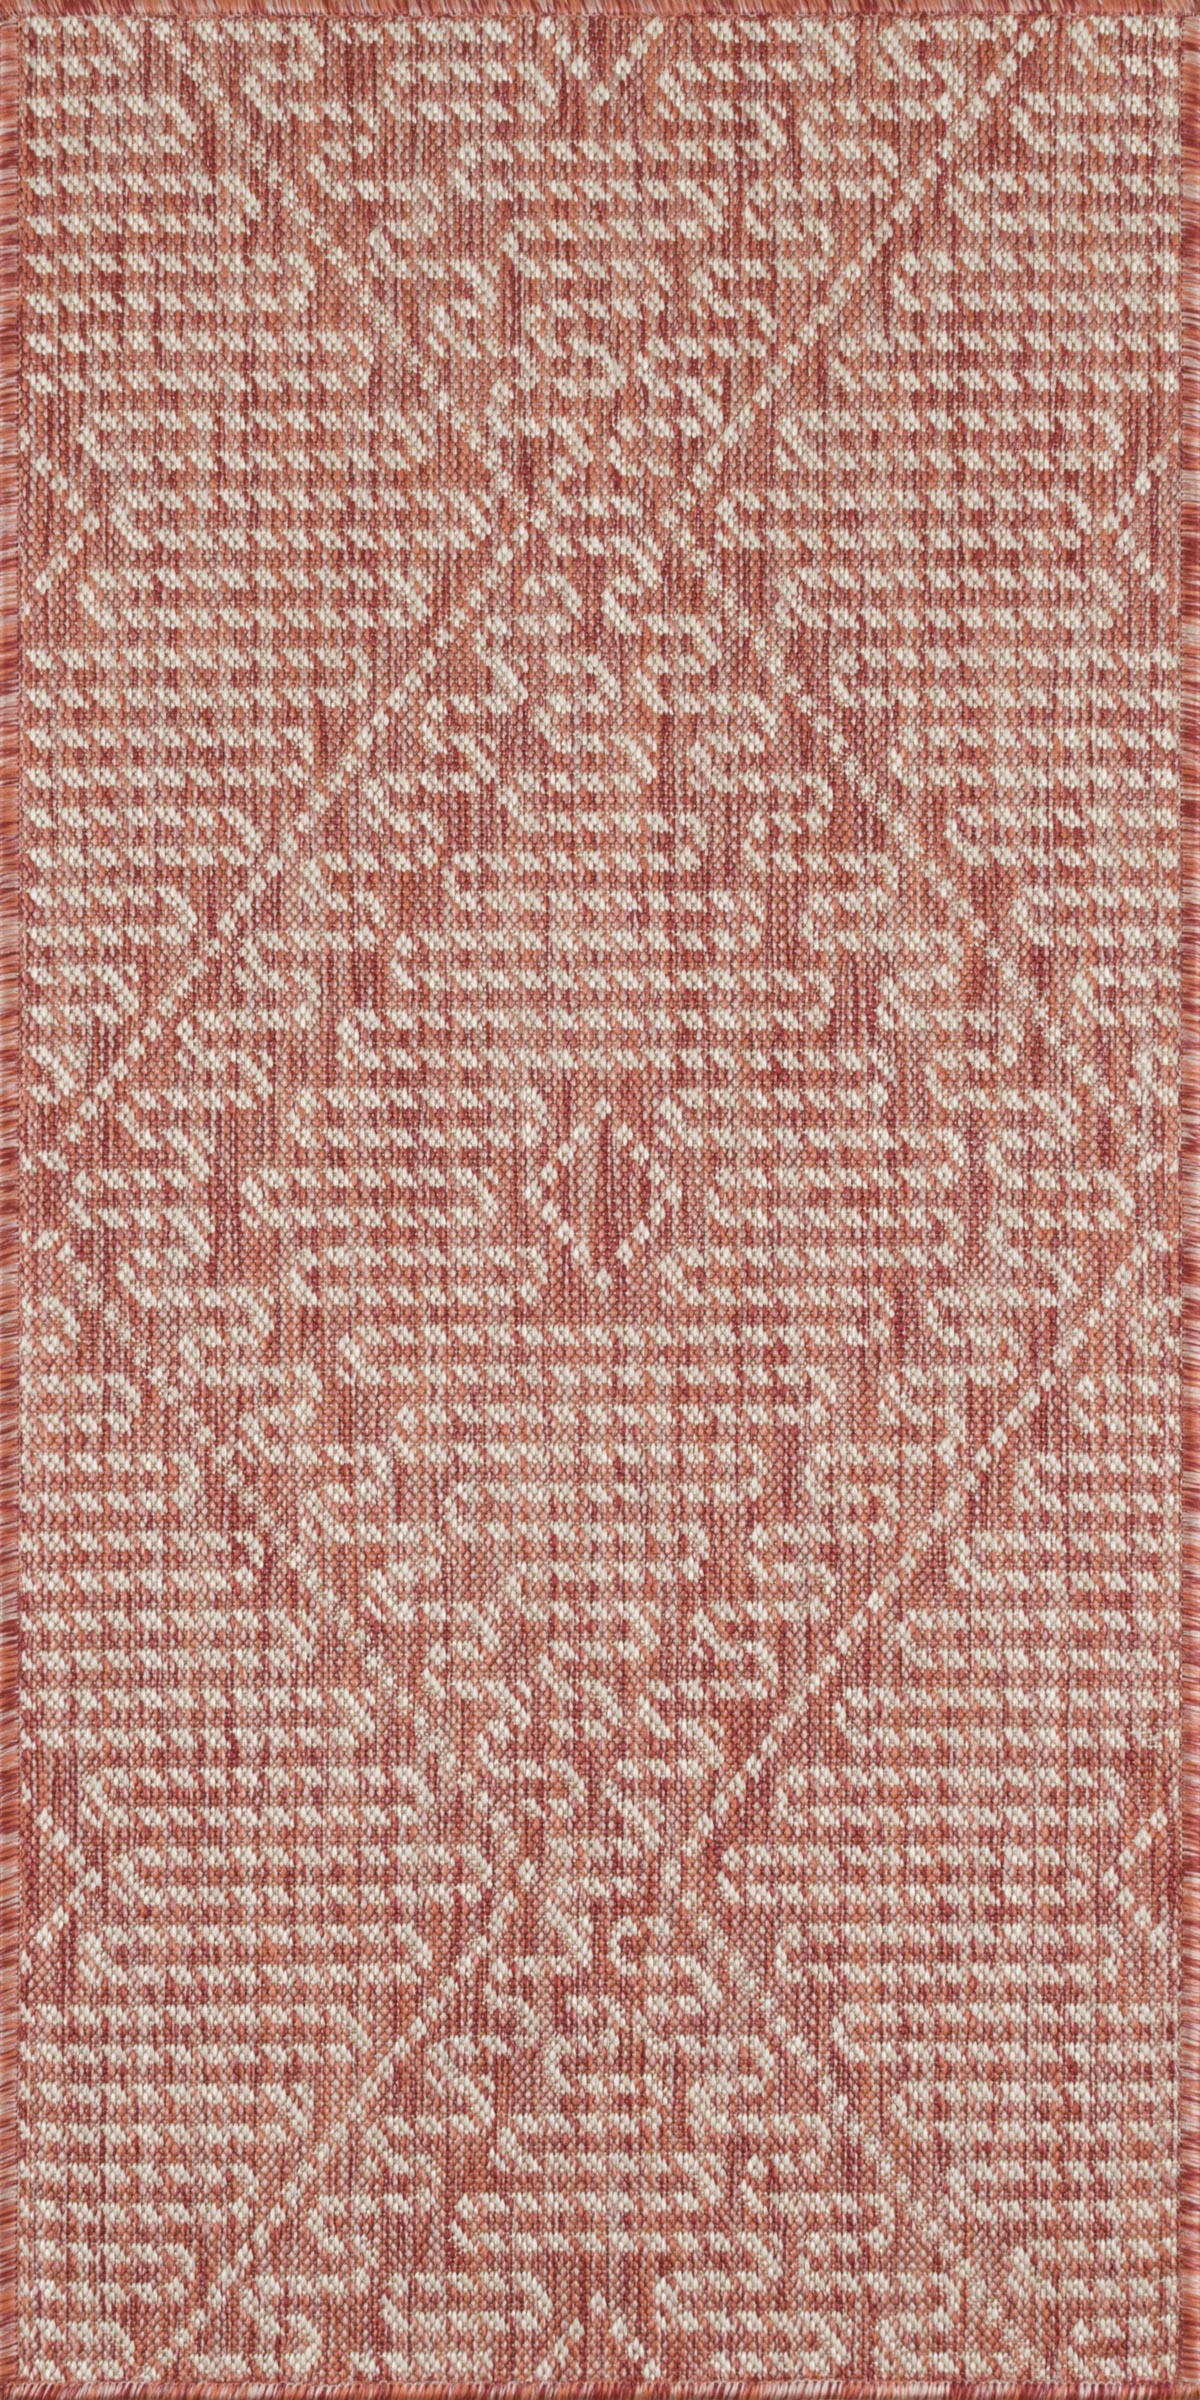 Tapis motifs géométriques rose - 70x140